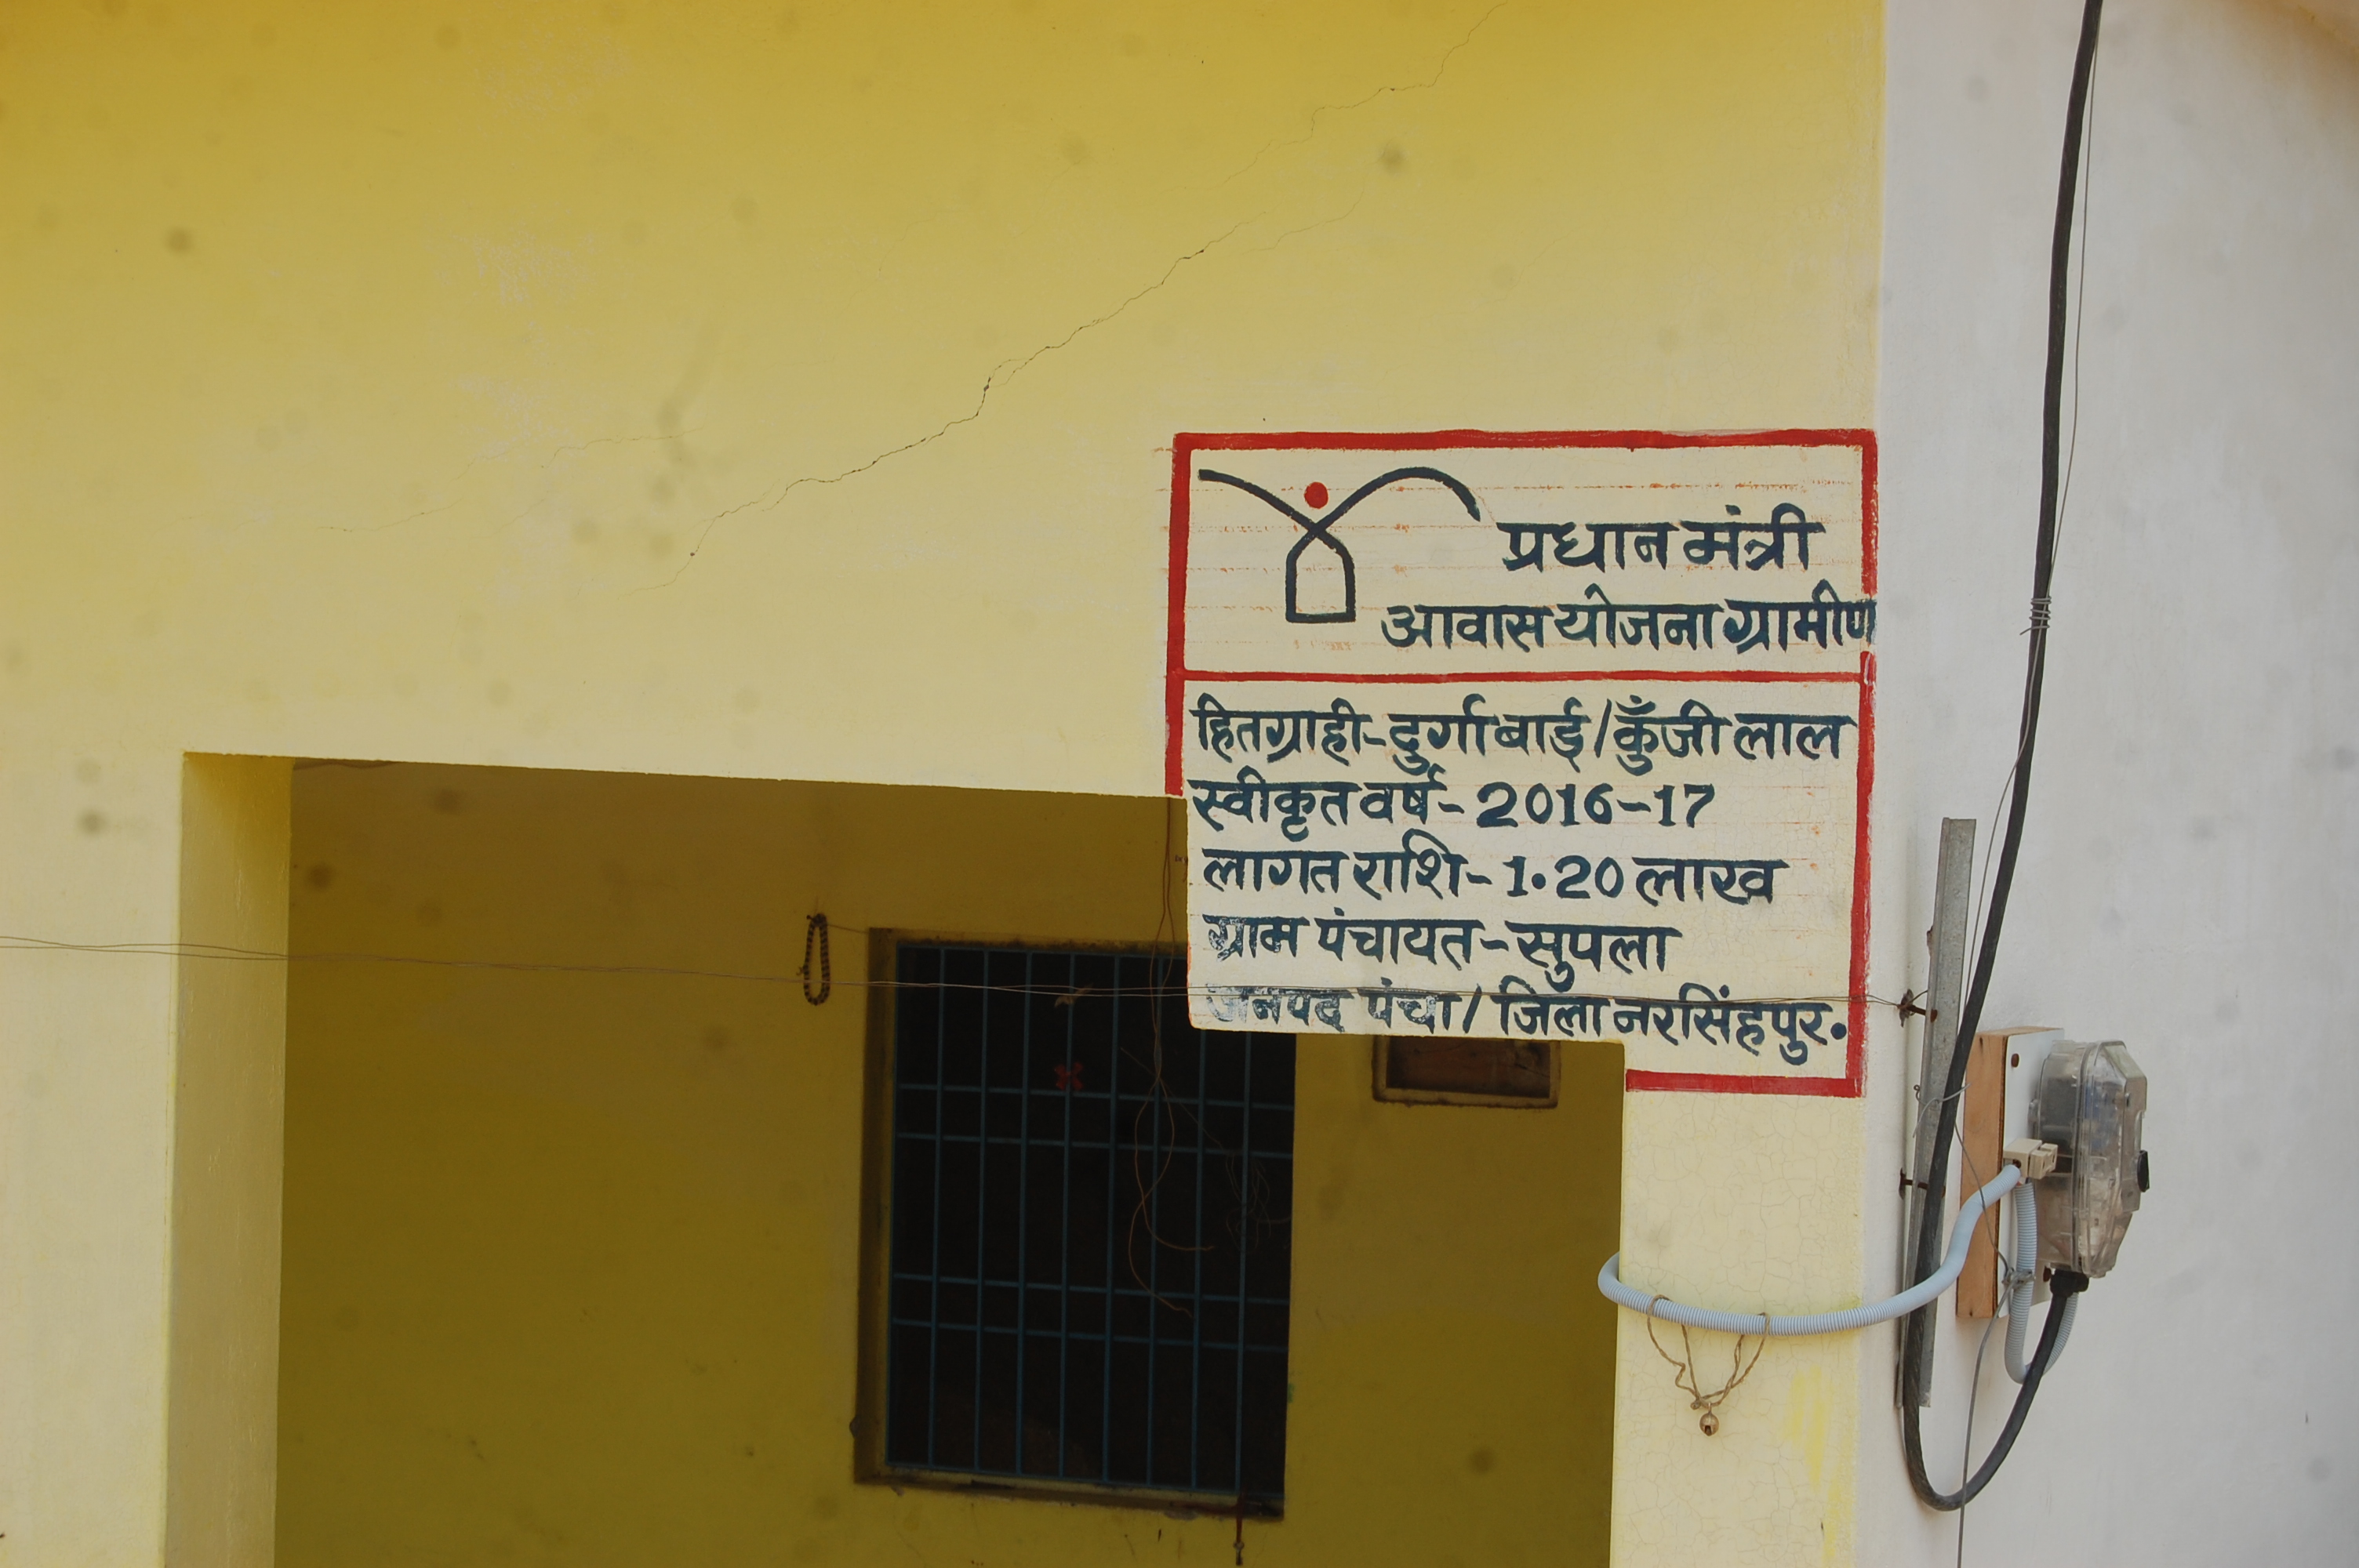 नरसिंहपुर जिले में प्रधानमंत्री आवास योजना की राशि में कर दी १२ हजार की कटौती  सरकार ने मान लिया अब नहीं शौचालय बनाने की जरूरत, नए आवासों में शौचालयों के लिए नहीं मिल रही राशि